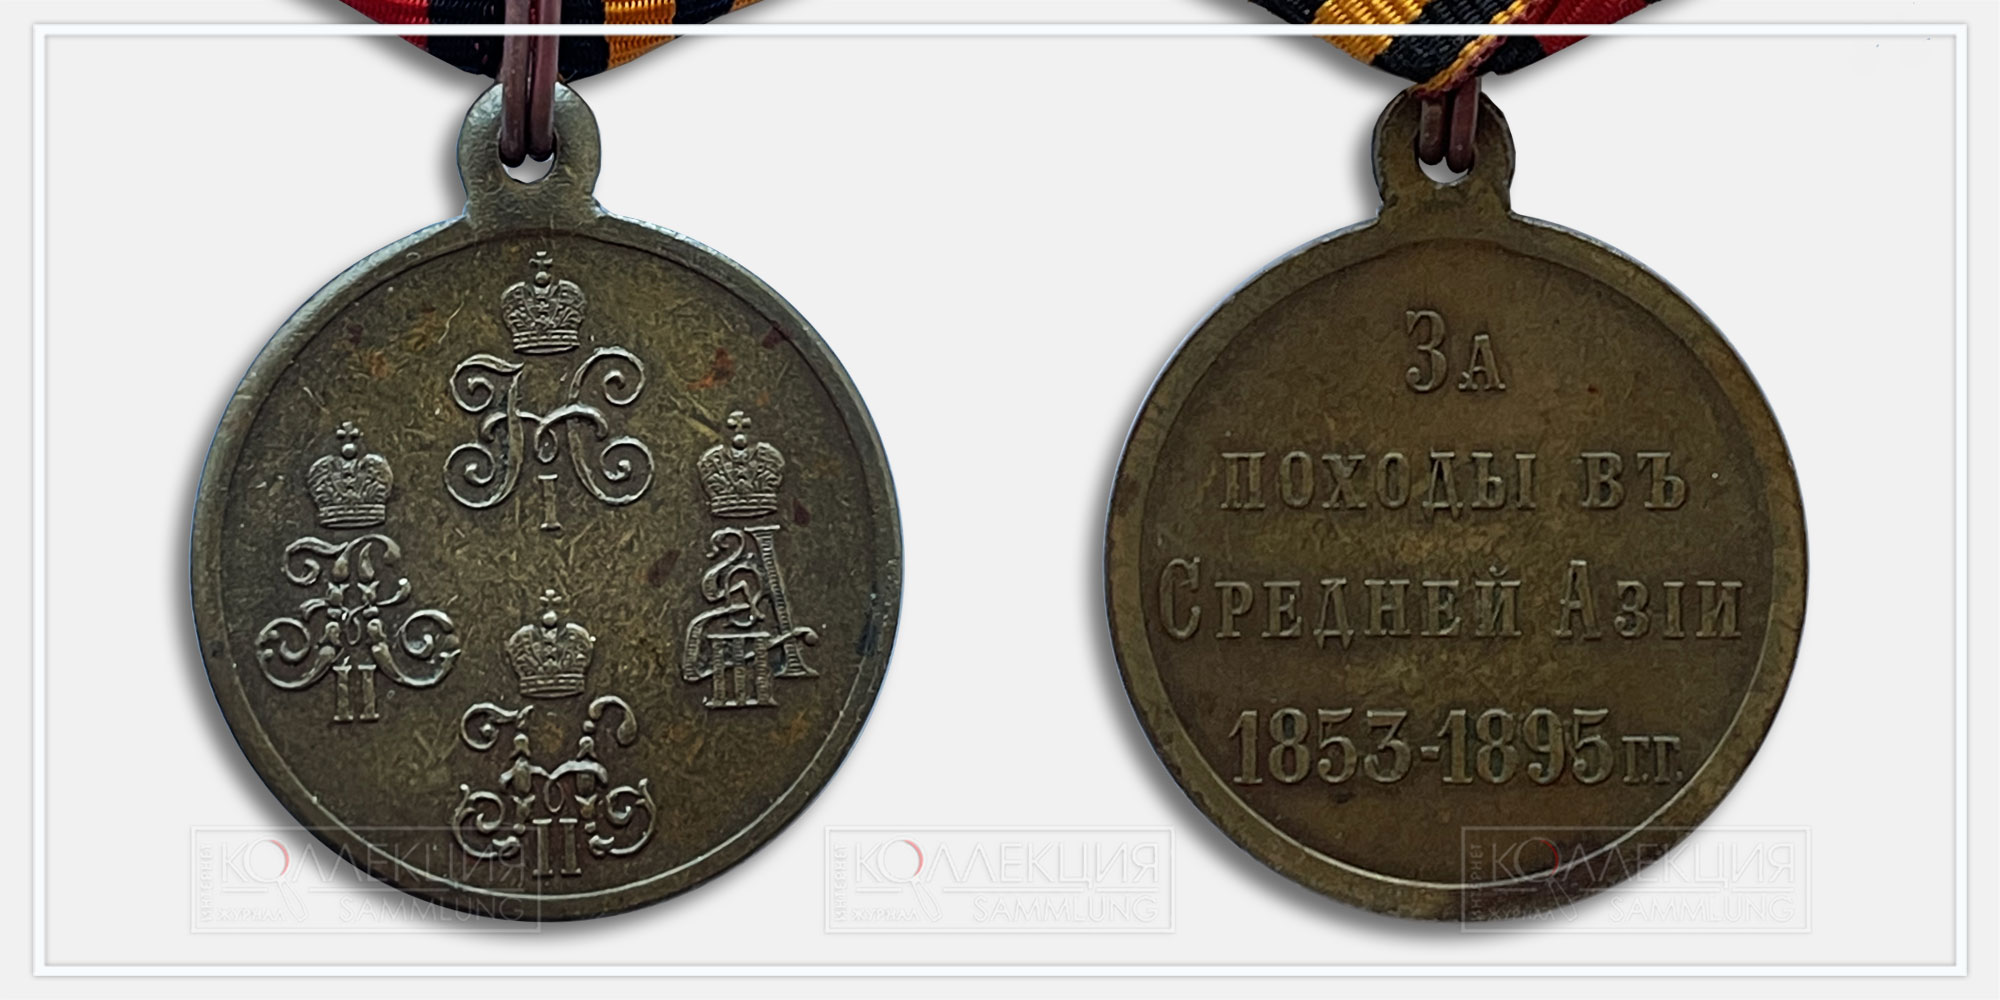 Медаль «За походы в Средней Азии 1853-1895»